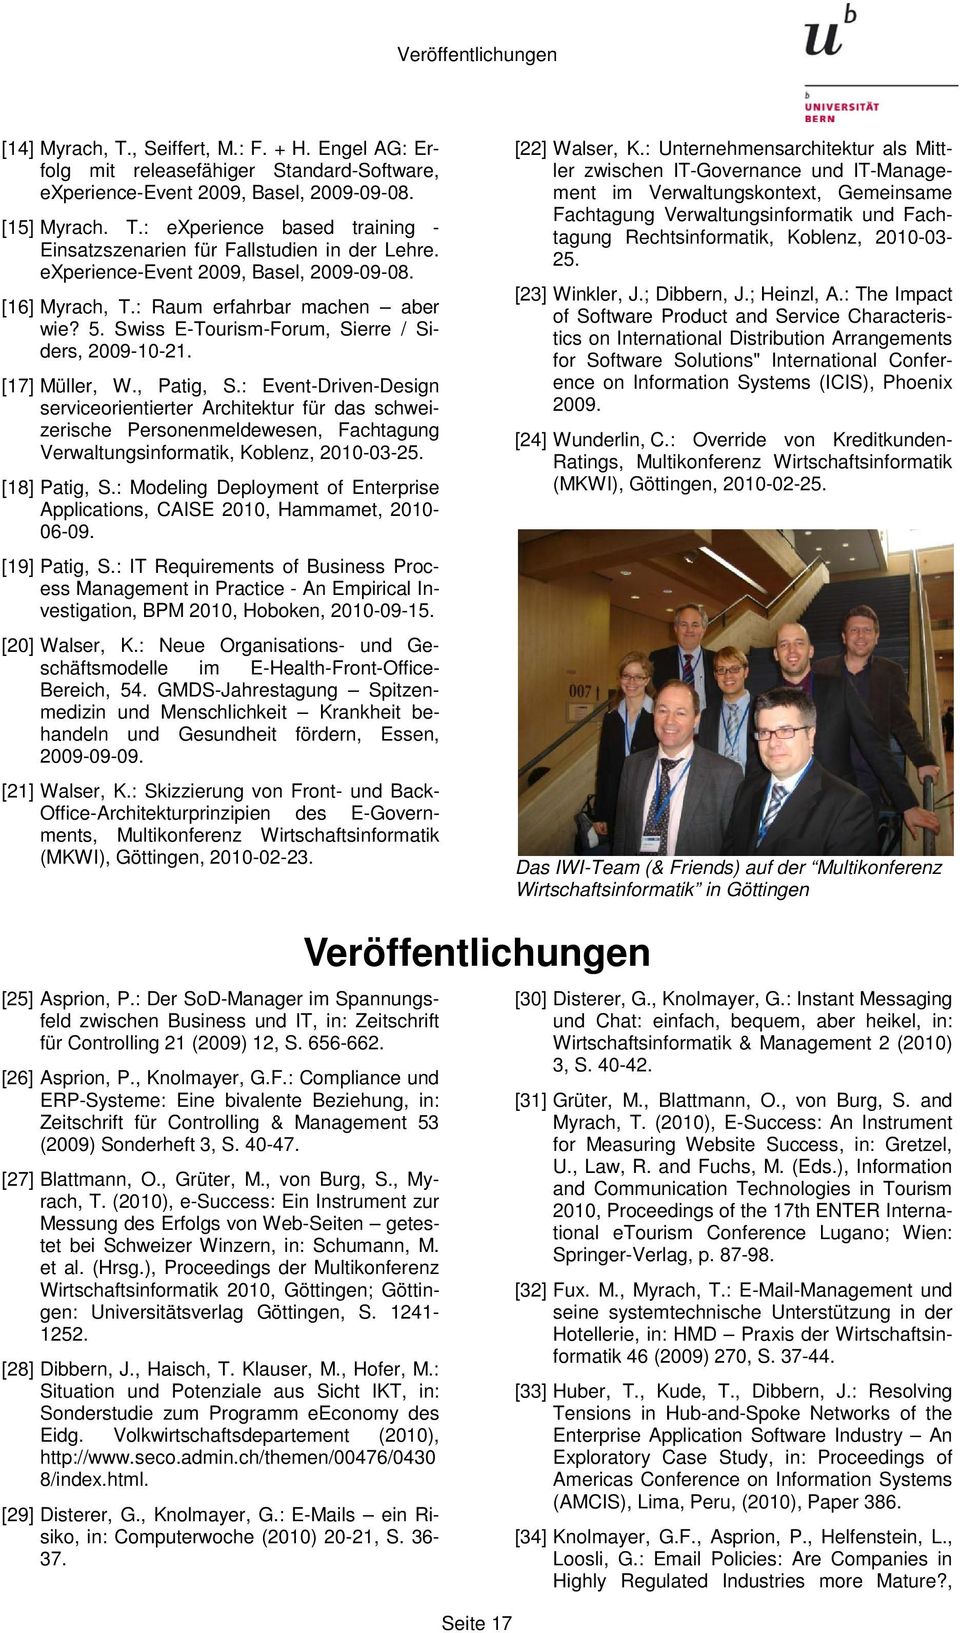 : Event-Driven-Design serviceorientierter Architektur für das schweizerische Personenmeldewesen, Fachtagung Verwaltungsinformatik, Koblenz, 2010-03-25. [18] Patig, S.